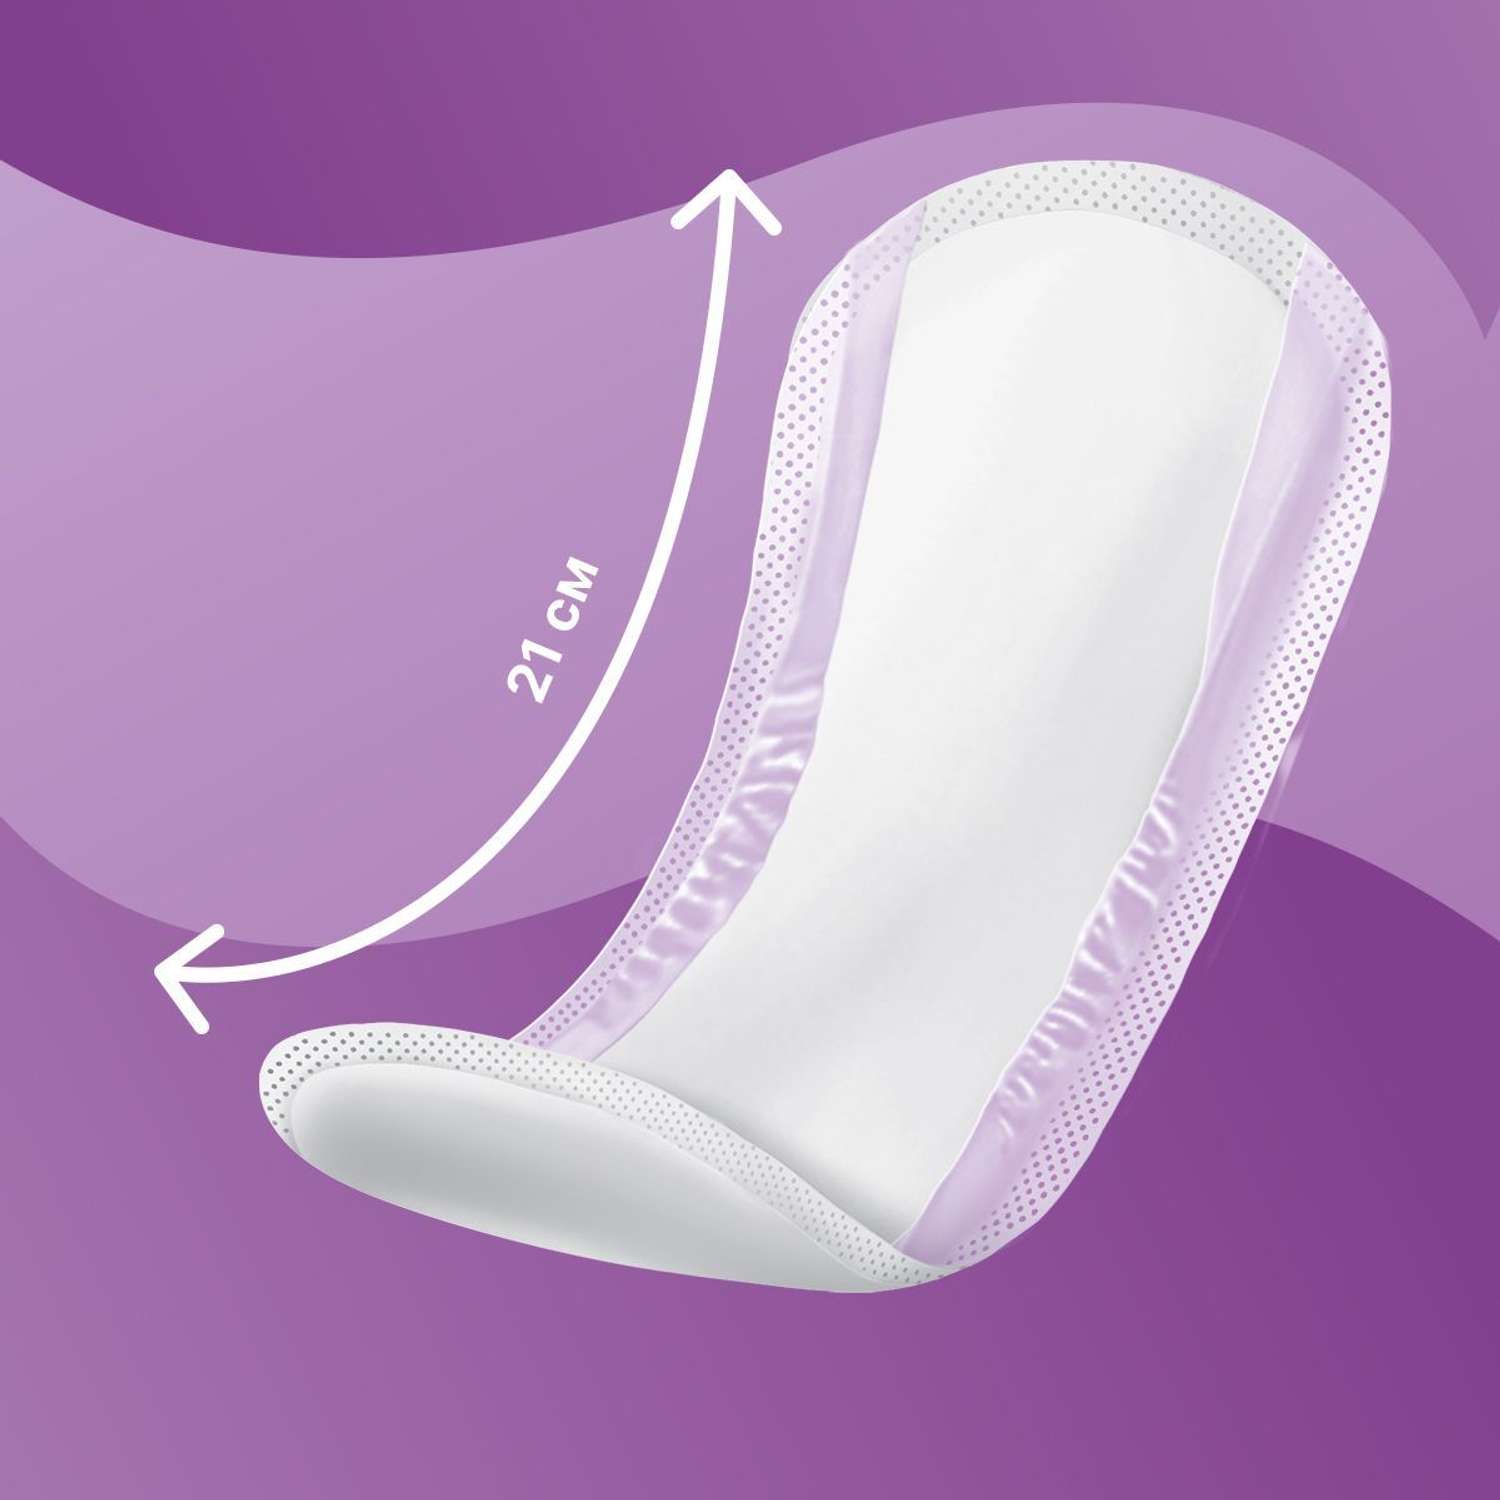 Урологические прокладки TerezaLady для женщин Mini супервпитывающие нейтрализующие запах трехслойные 40 шт 2 уп по 20 шт - фото 2